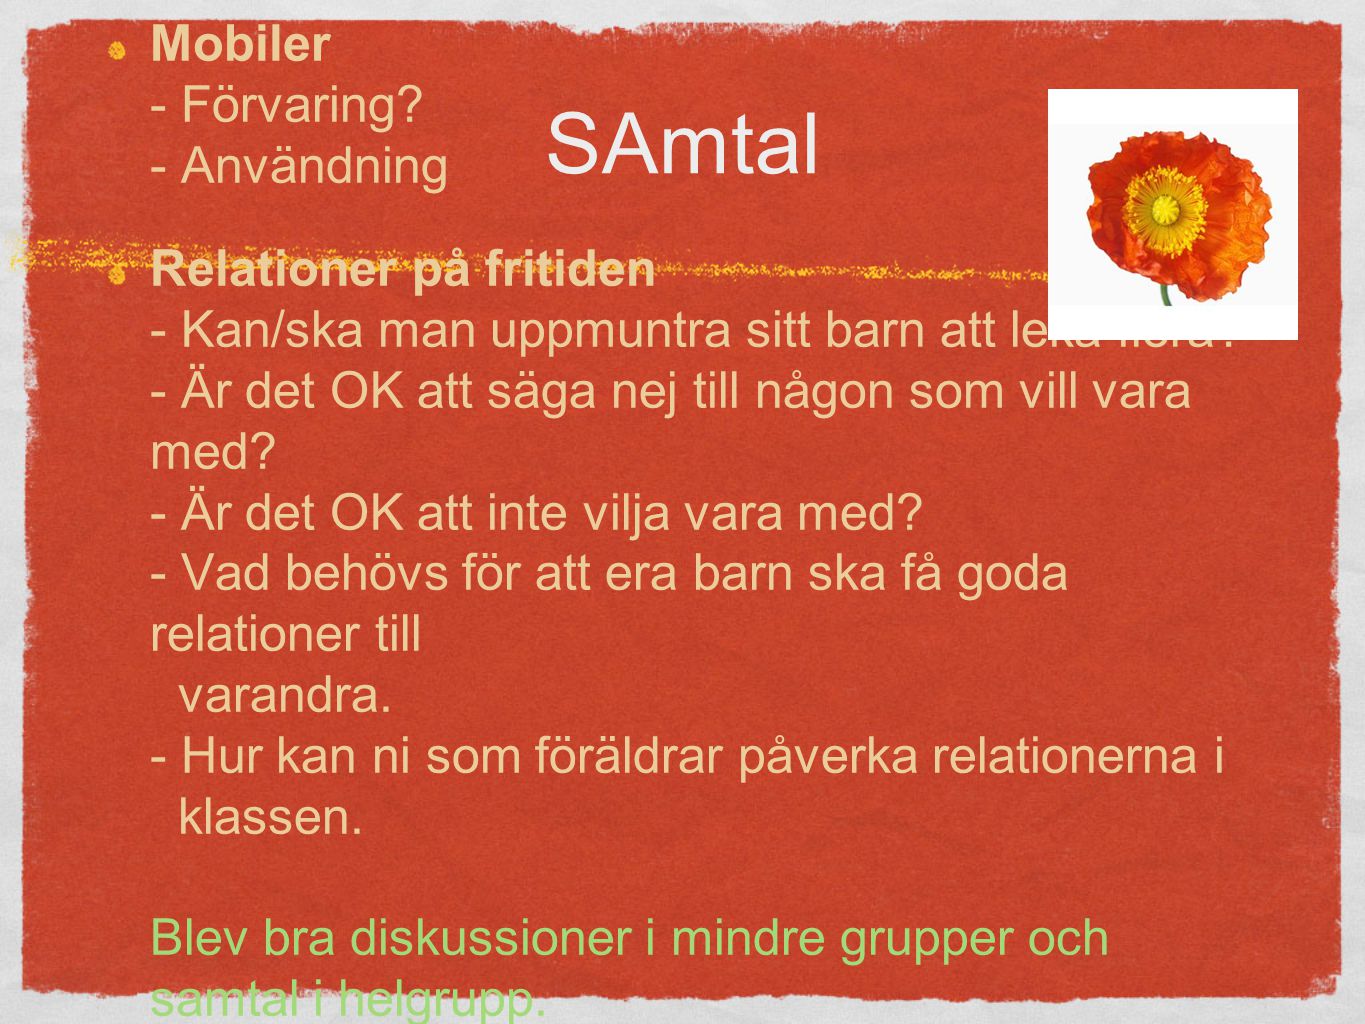 SAmtal Mobiler - Förvaring.